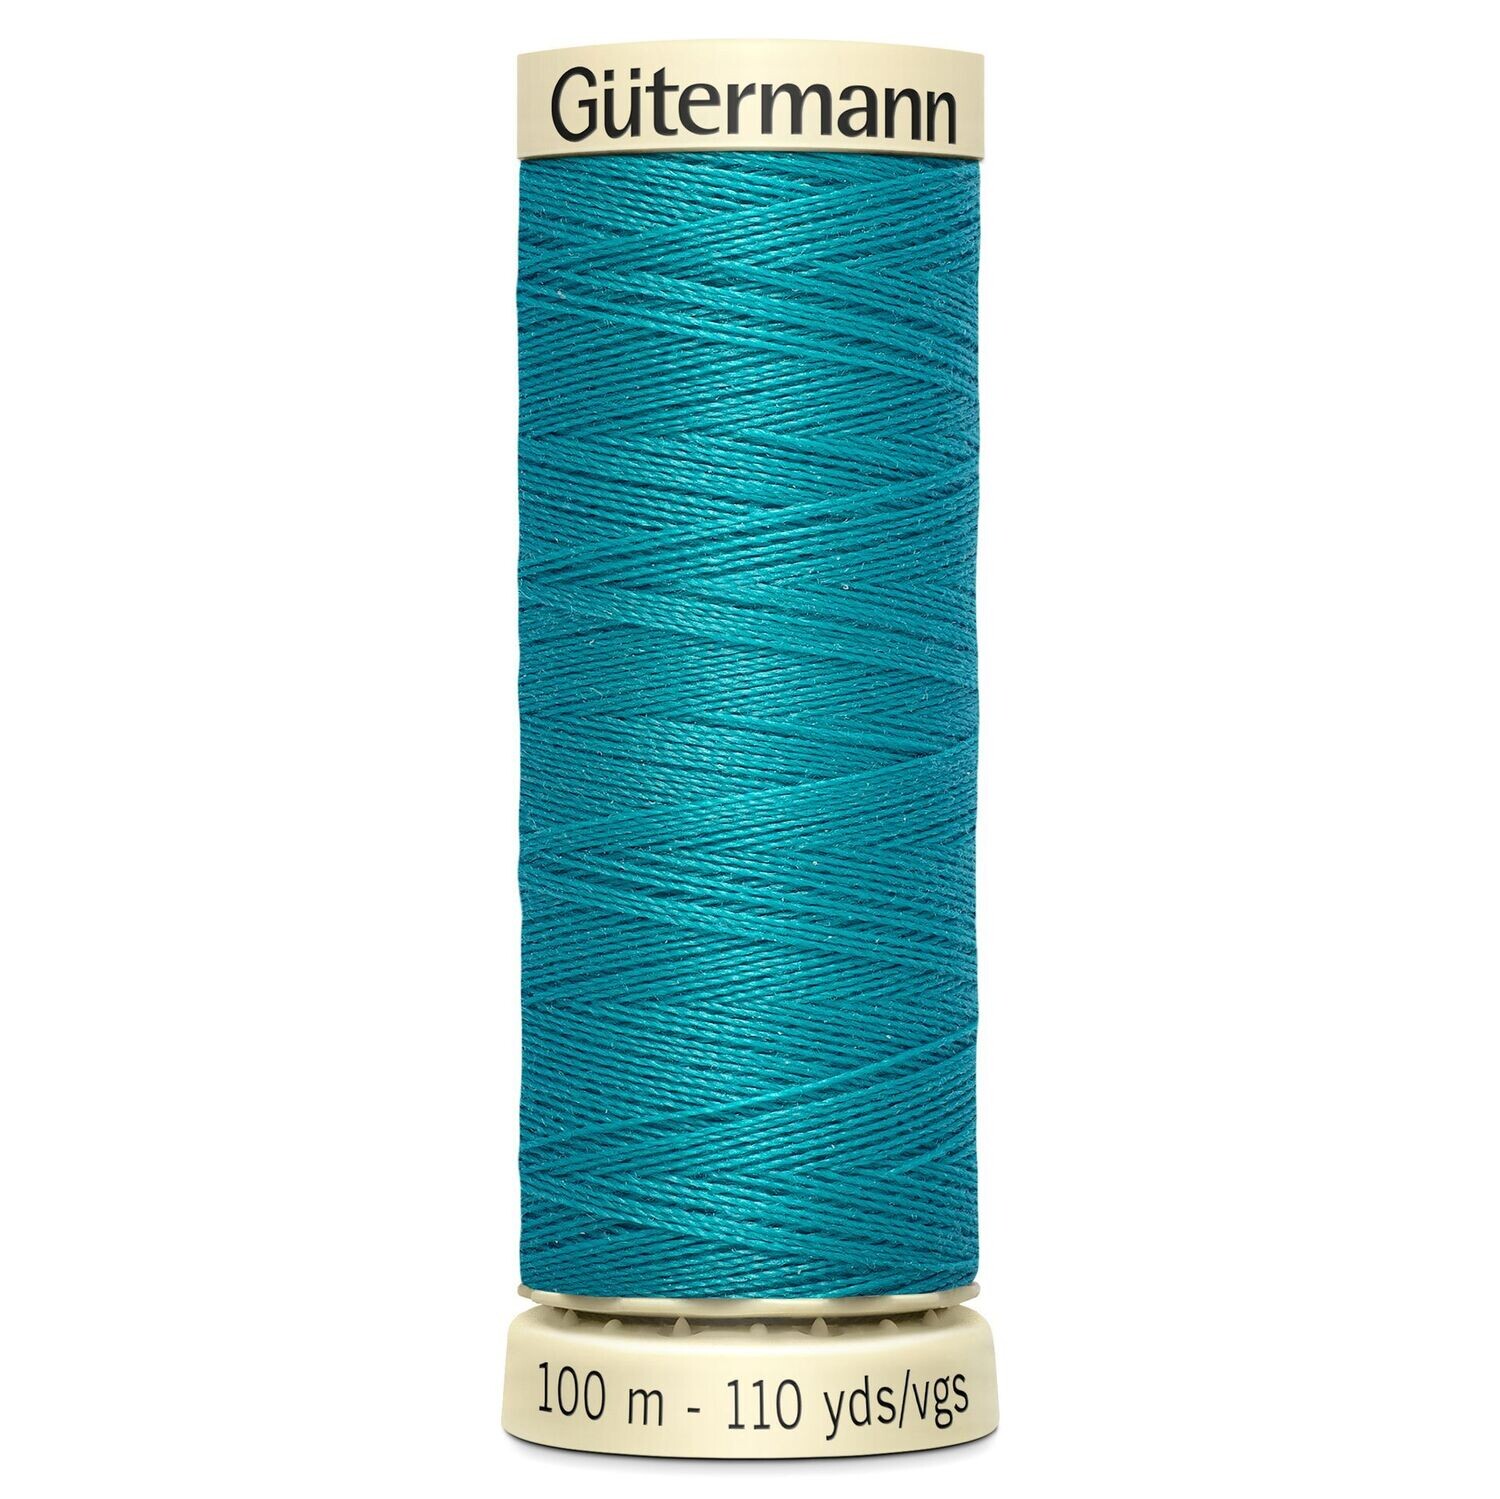 Sew All Thread 100m - Gutermann - Colour 055